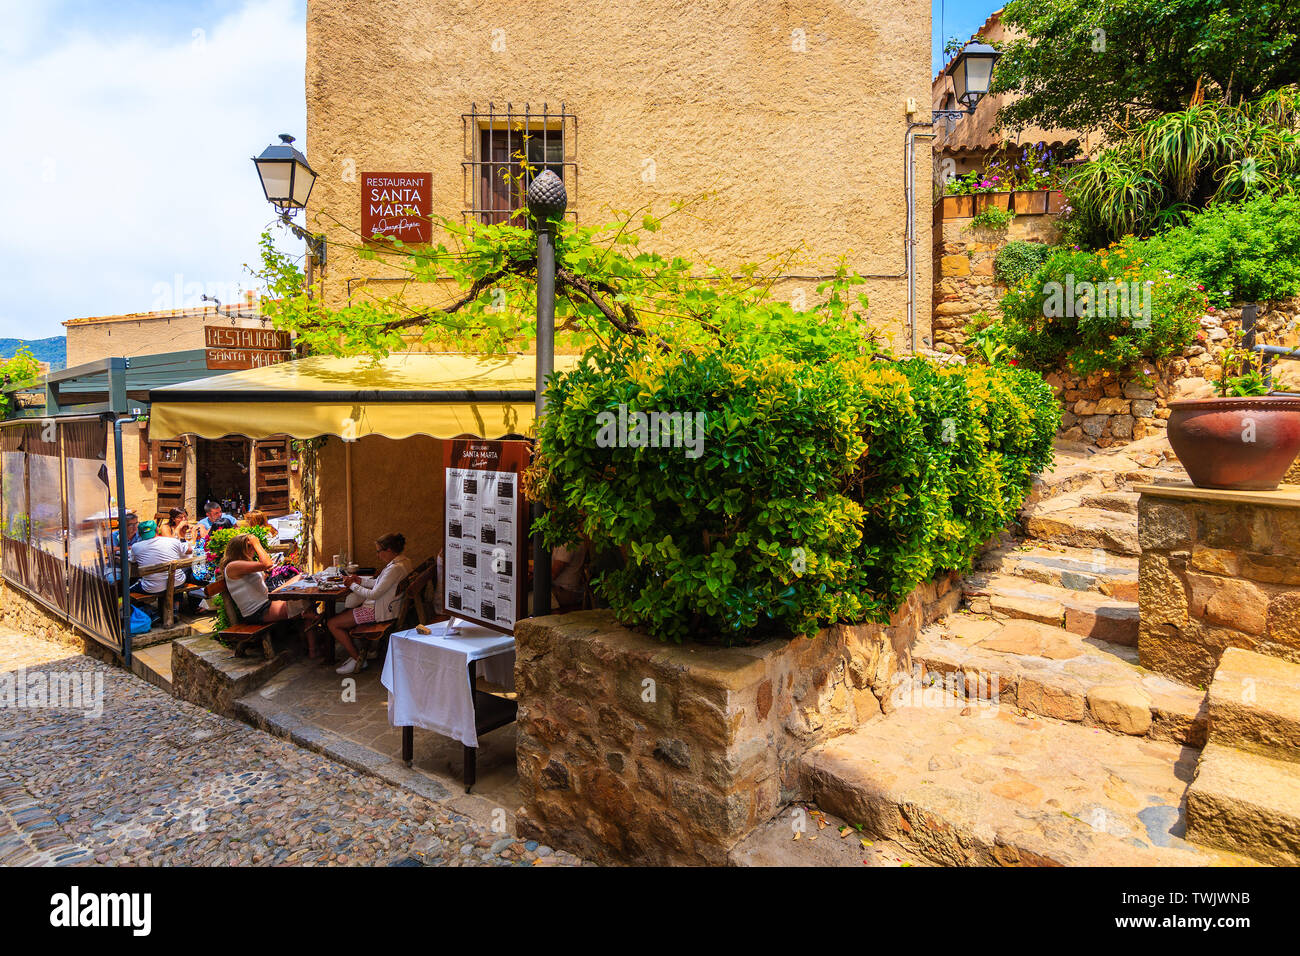 TOSSA DE MAR CITTÀ VECCHIA, Spagna - giu 3, 2019: Persone a pranzo nel ristorante nella città vecchia di Tossa de Mar con case in pietra, Costa Brava, Spagna. Foto Stock